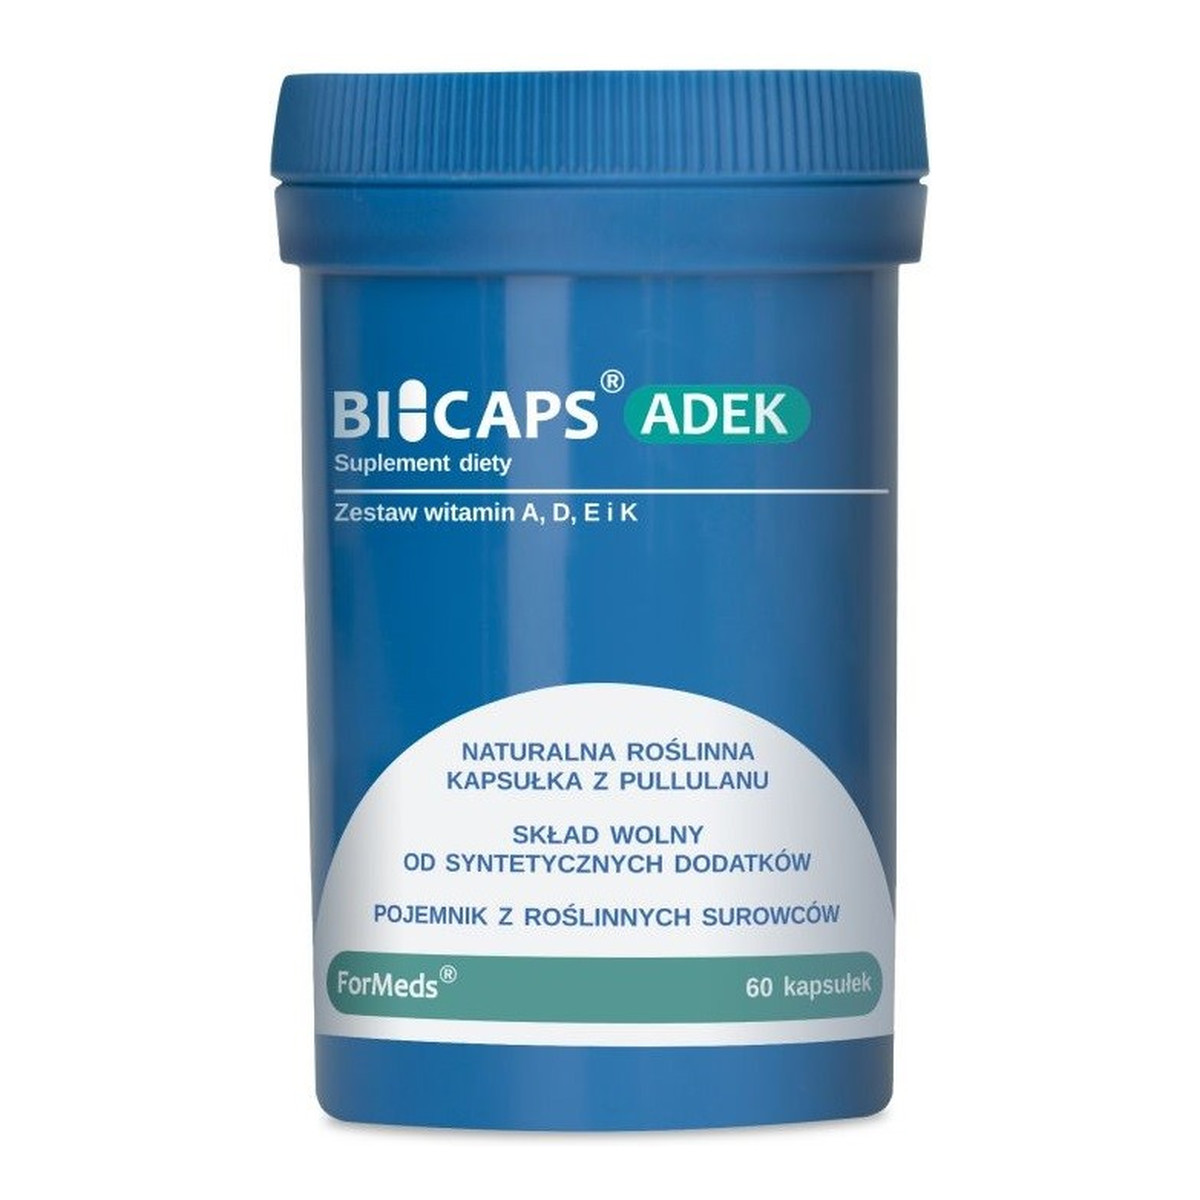 Formeds Bicaps ADEK zestaw witamin A D E K suplement diety 60 kapsułek